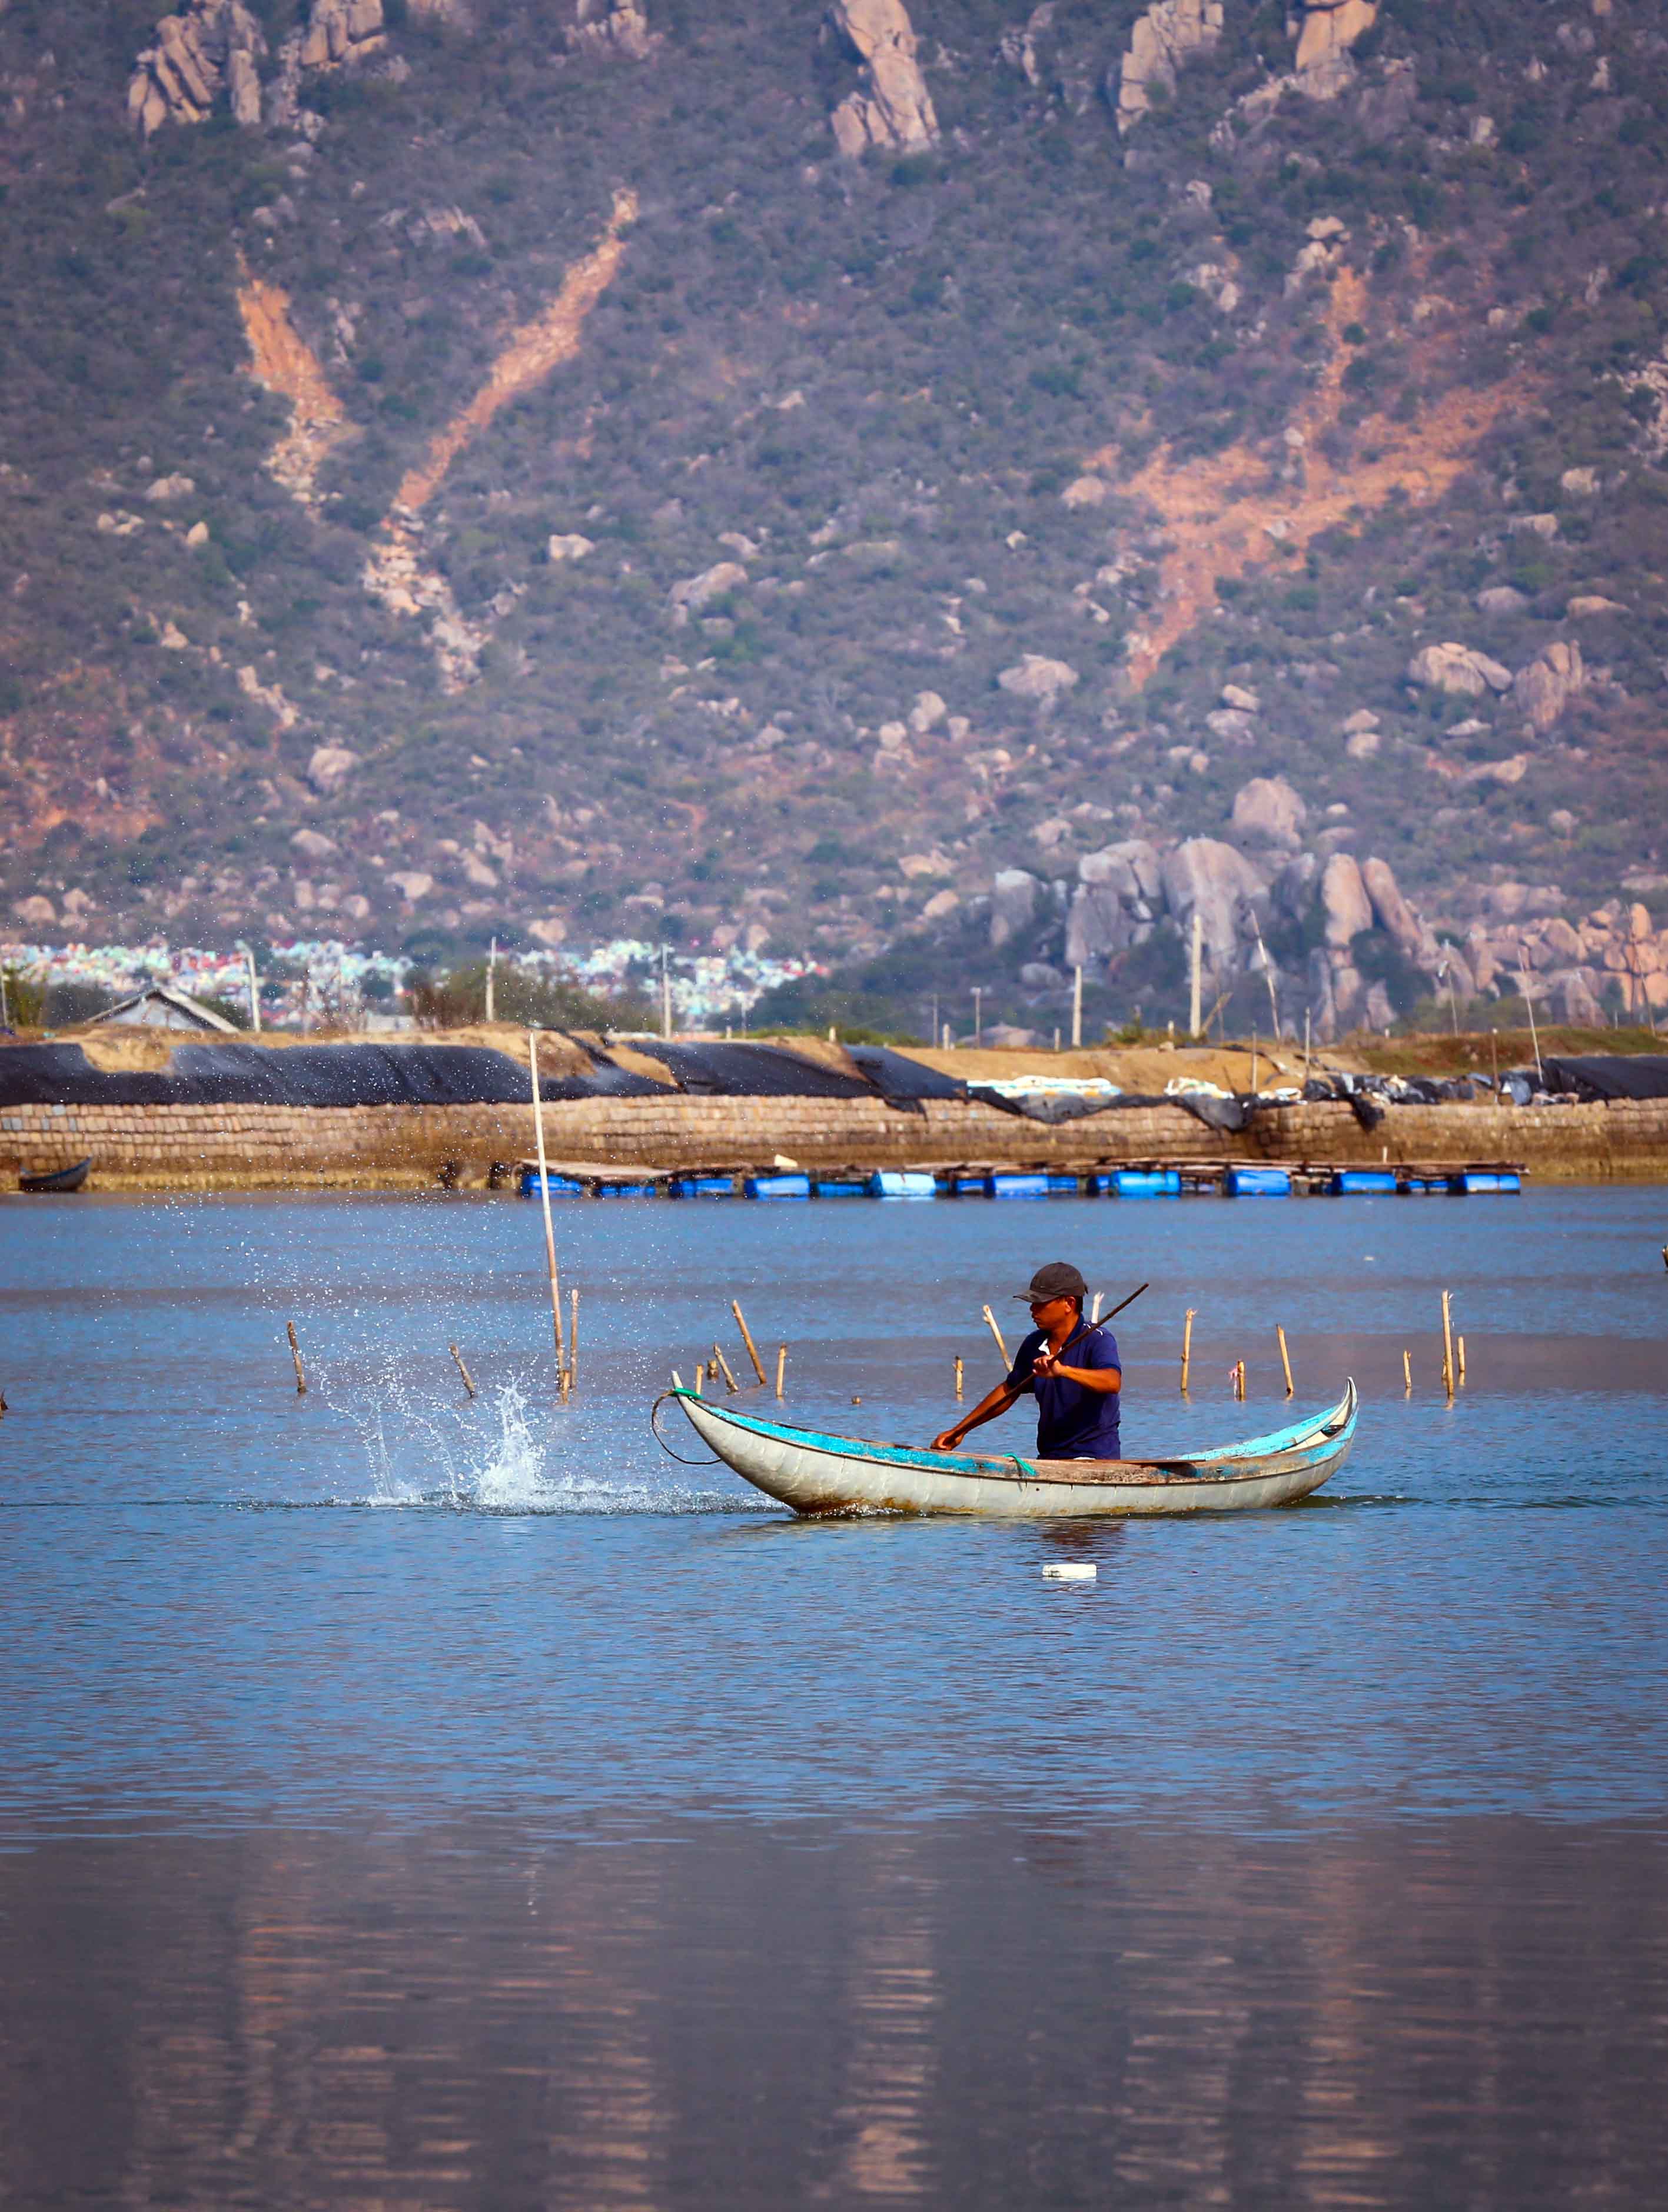 Là một trong 12 đầm phá ven biển lớn nhất Việt Nam, Đầm Nại cũng là nơi mưu sinh của nhiều ngư dân vùng biển với nghề khai thác hải sản tự nhiên từ lòng đầm bằng những chiếc xoỏng, nhẹ nhàng lướt trên mặt đầm câu, thả lưới, đặt lờ bắt cá, cạy hàu....